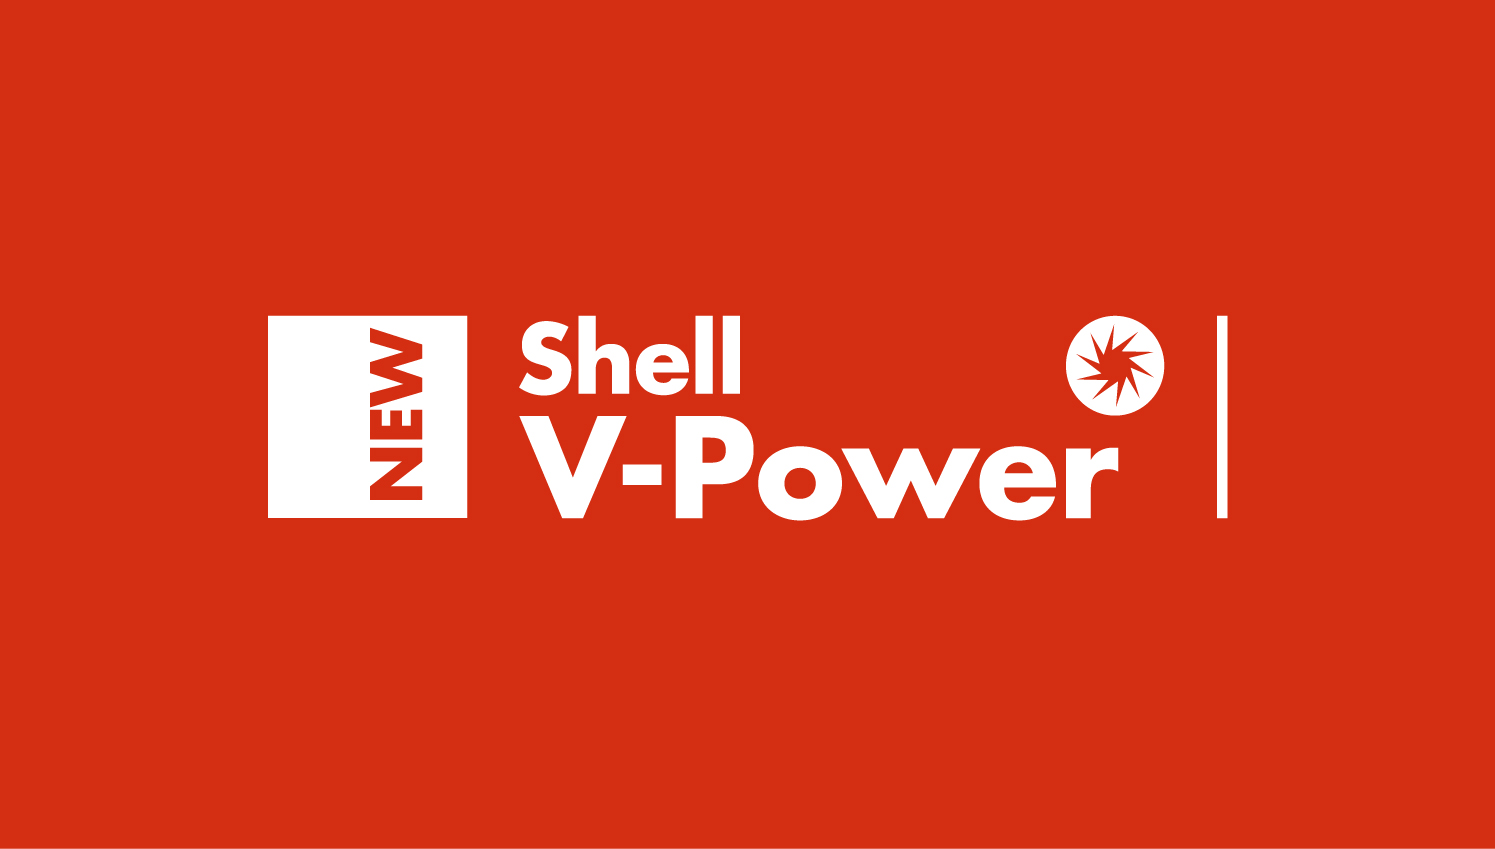 Пауэр шелл. Shell v-Power. АЗС Shell v-Power. Shell v-Power logo. Dynaflex логотип.